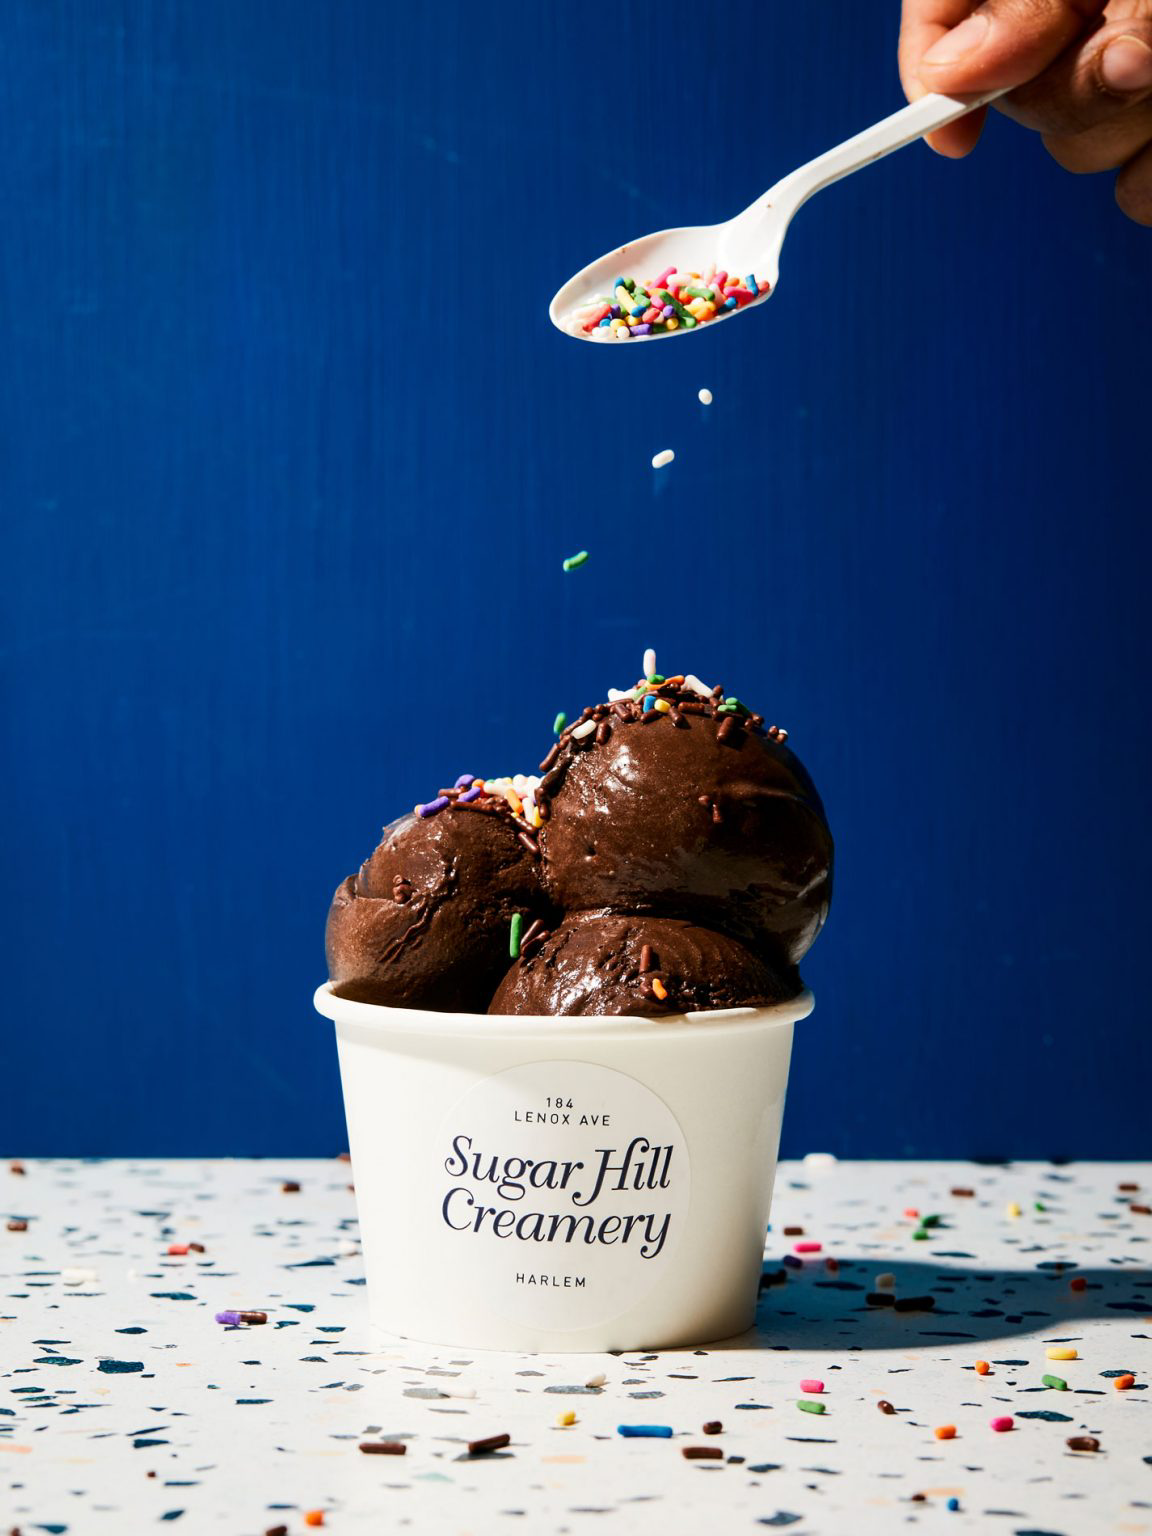 Sprinkles being sprinkled on top of ice cream.